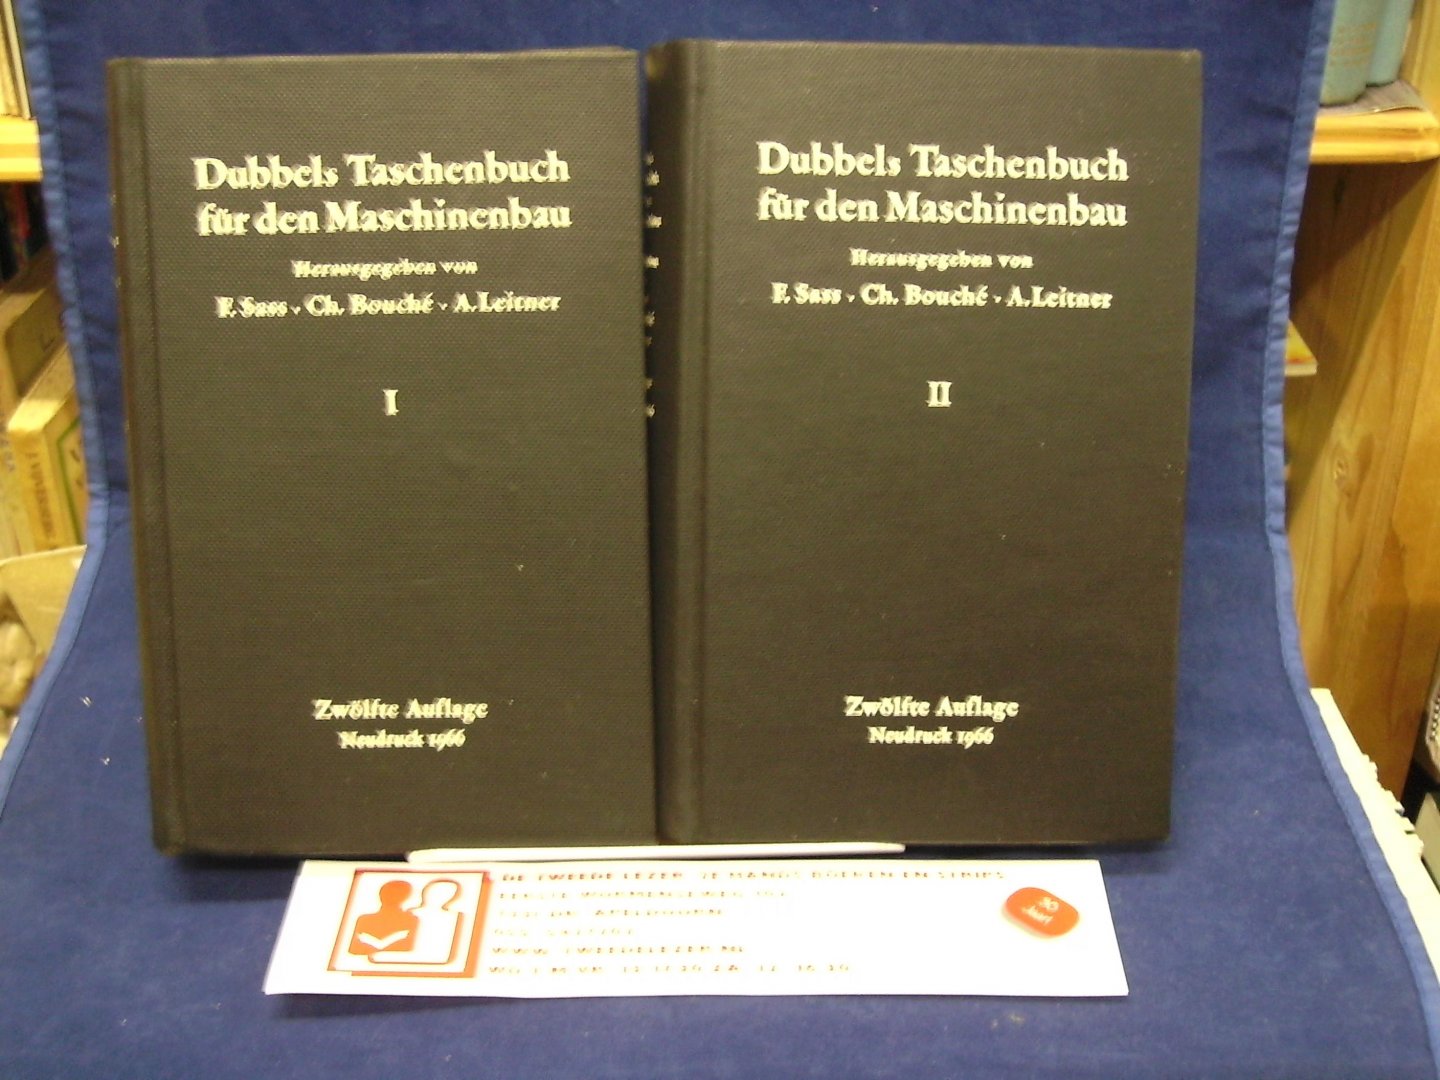 Sass, F. ,Ch Bouché, A. Leitner - Dubbels Taschenbuch für den Maschinenbau  / Zwölfte Auflage Neudruck 1966